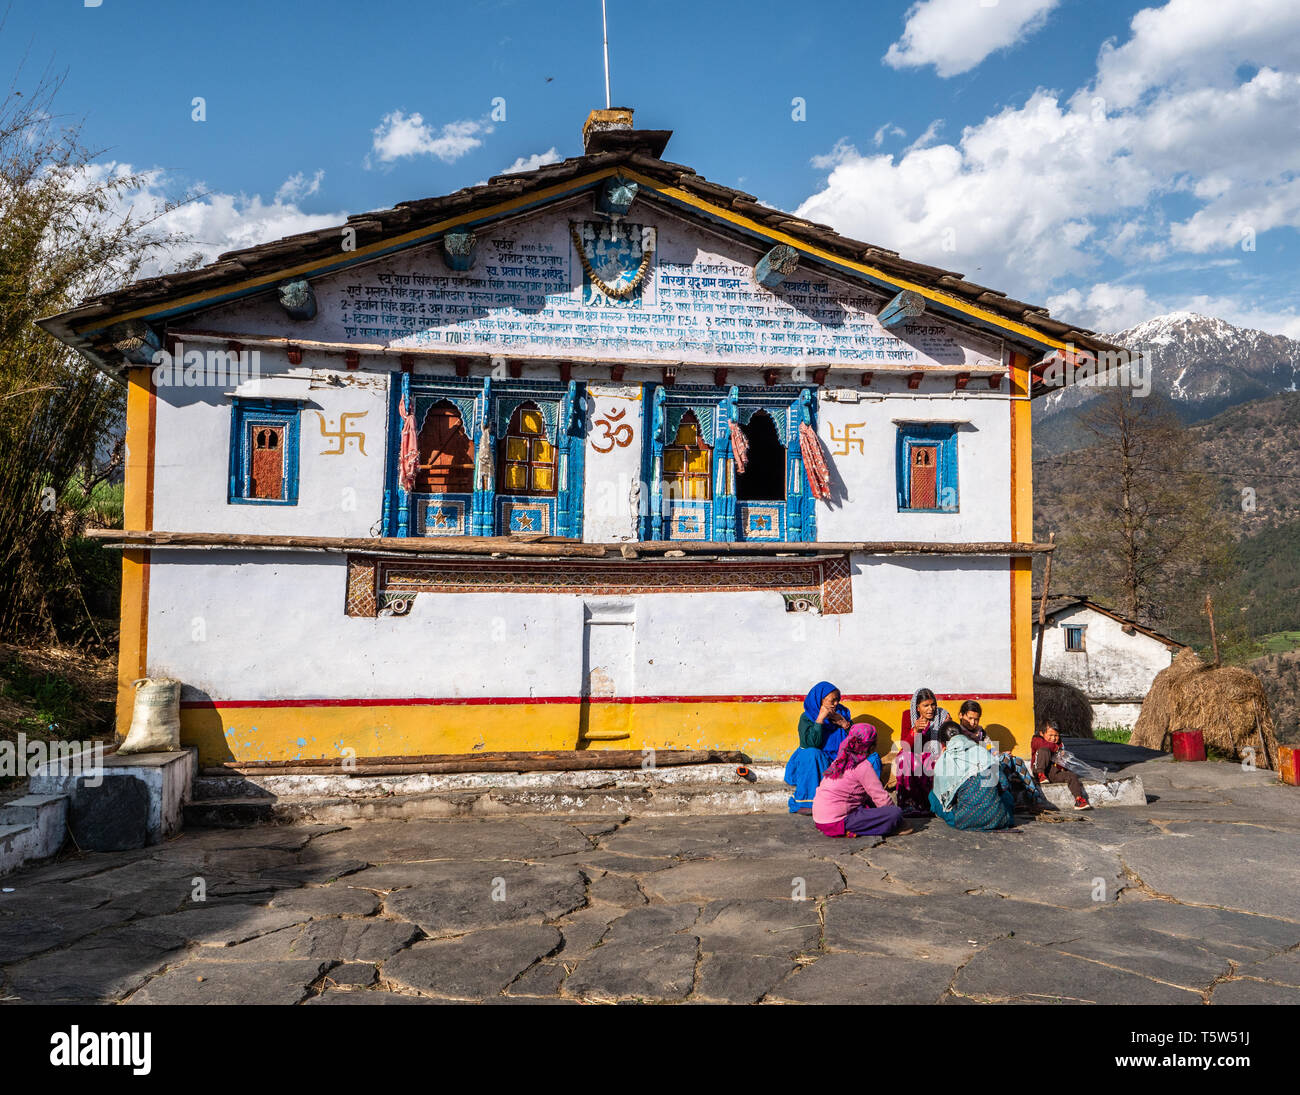 Un groupe de villageois assis par la pittoresque maison principale en Supi village dans les hauteurs de la vallée de l'Uttarakhand Saryu Himalaya Inde du nord Banque D'Images